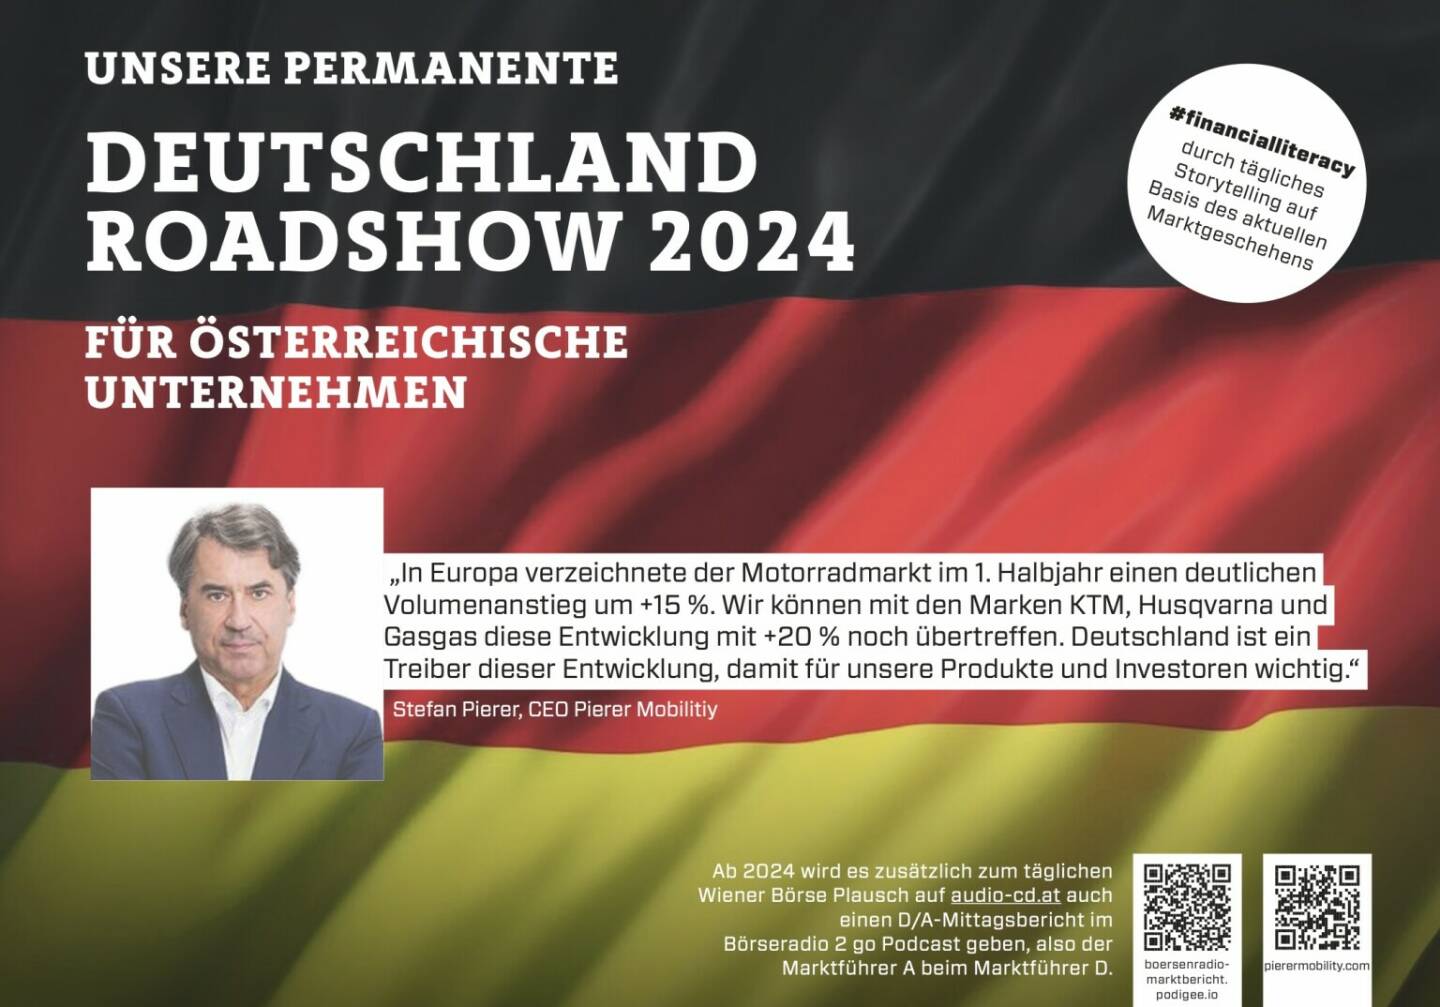 Stefan Pierer mit Pierer Mobility 2024 mit uns auf Deutschlandroadshow für https://boersenradio-marktbericht.podigee.io